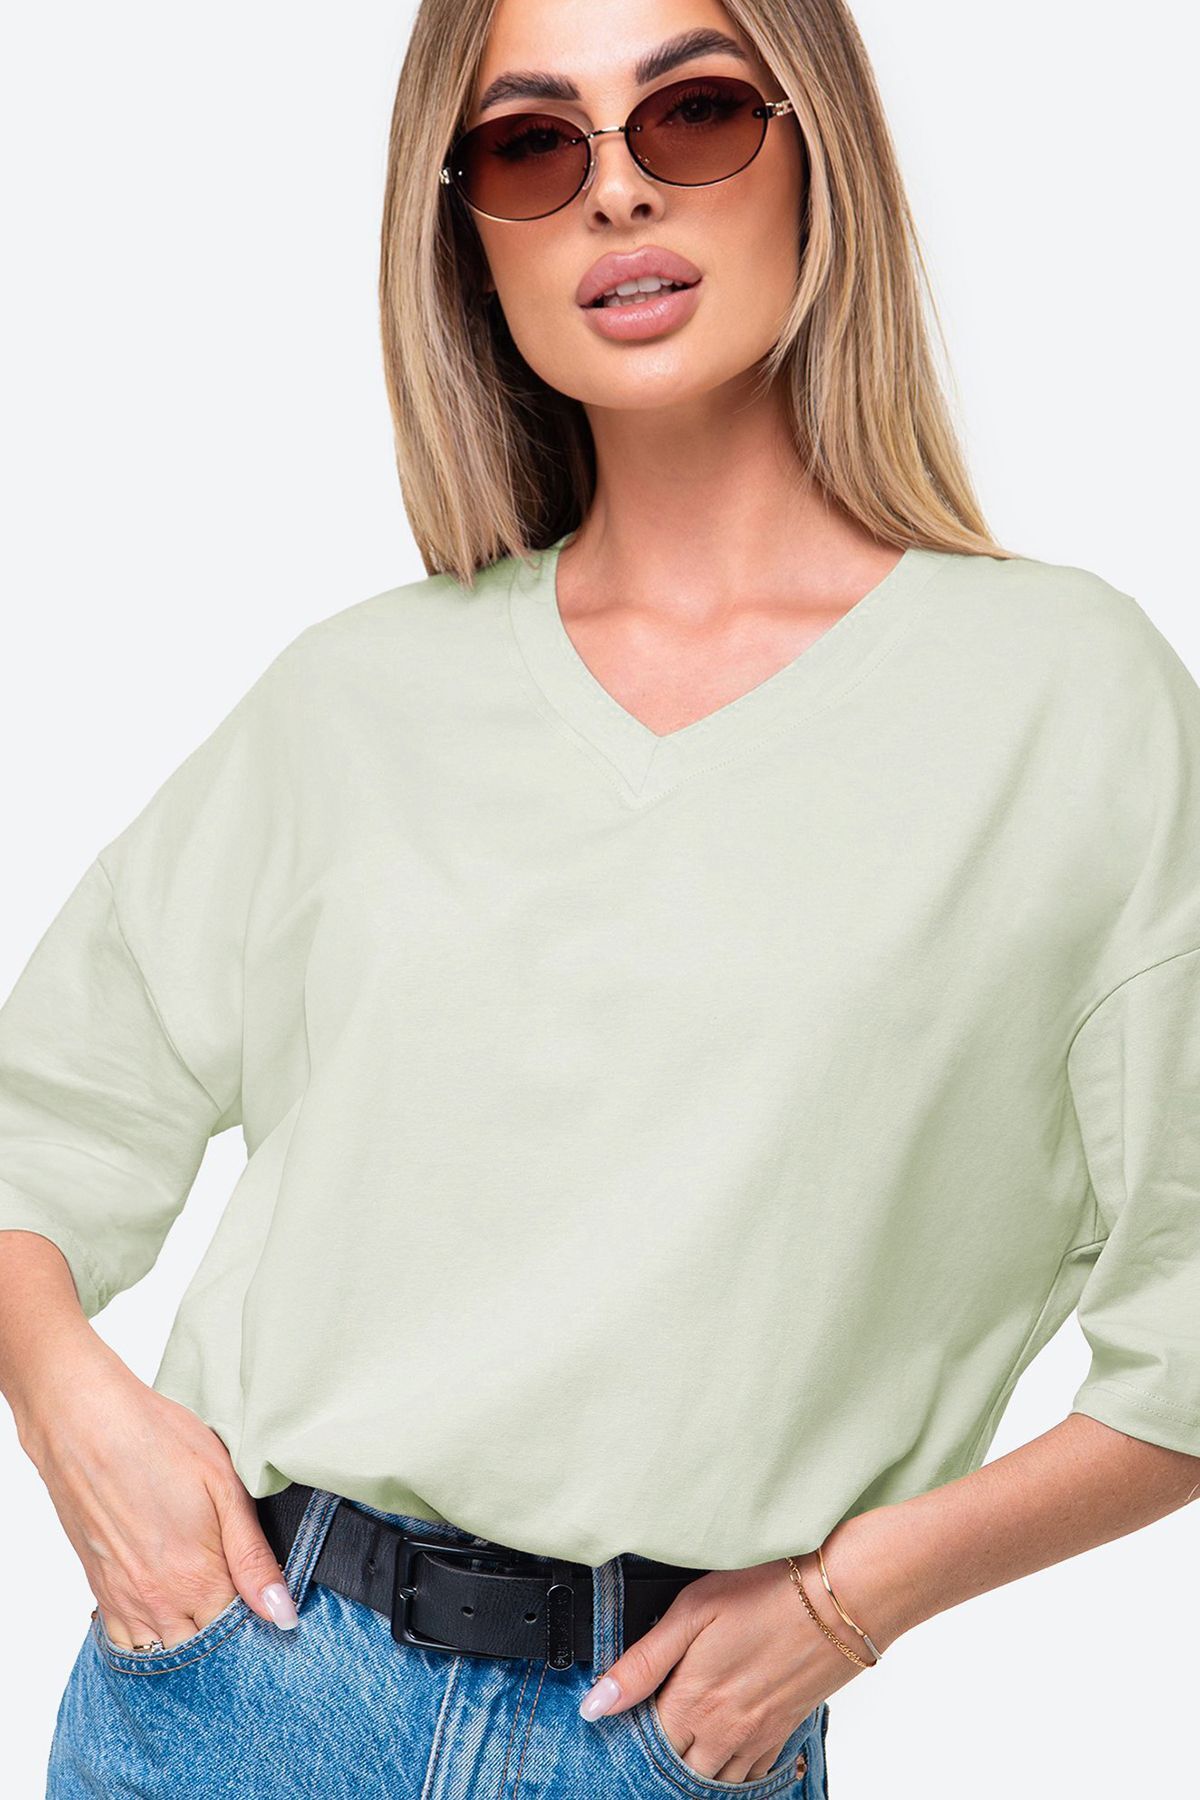 Happyfox Pamuklu Likralı Kadın V Yaka Baskısız Oversize Düz T-shirt Basic Açık Yeşil